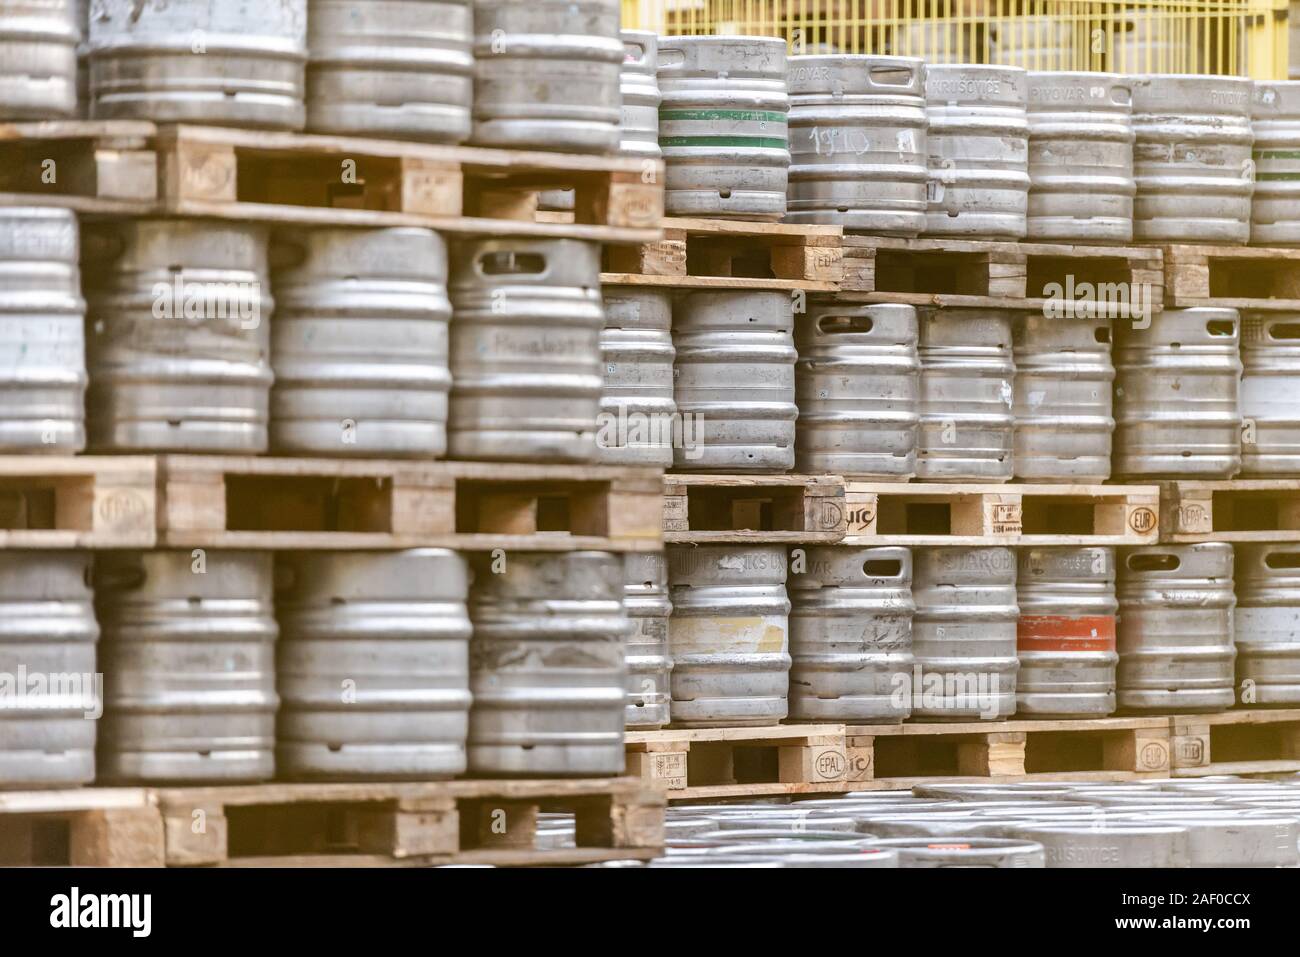 Barili di birra. La fabbrica di birra. Deposito di birra. Rack di barili di birra su pallet. Foto Stock